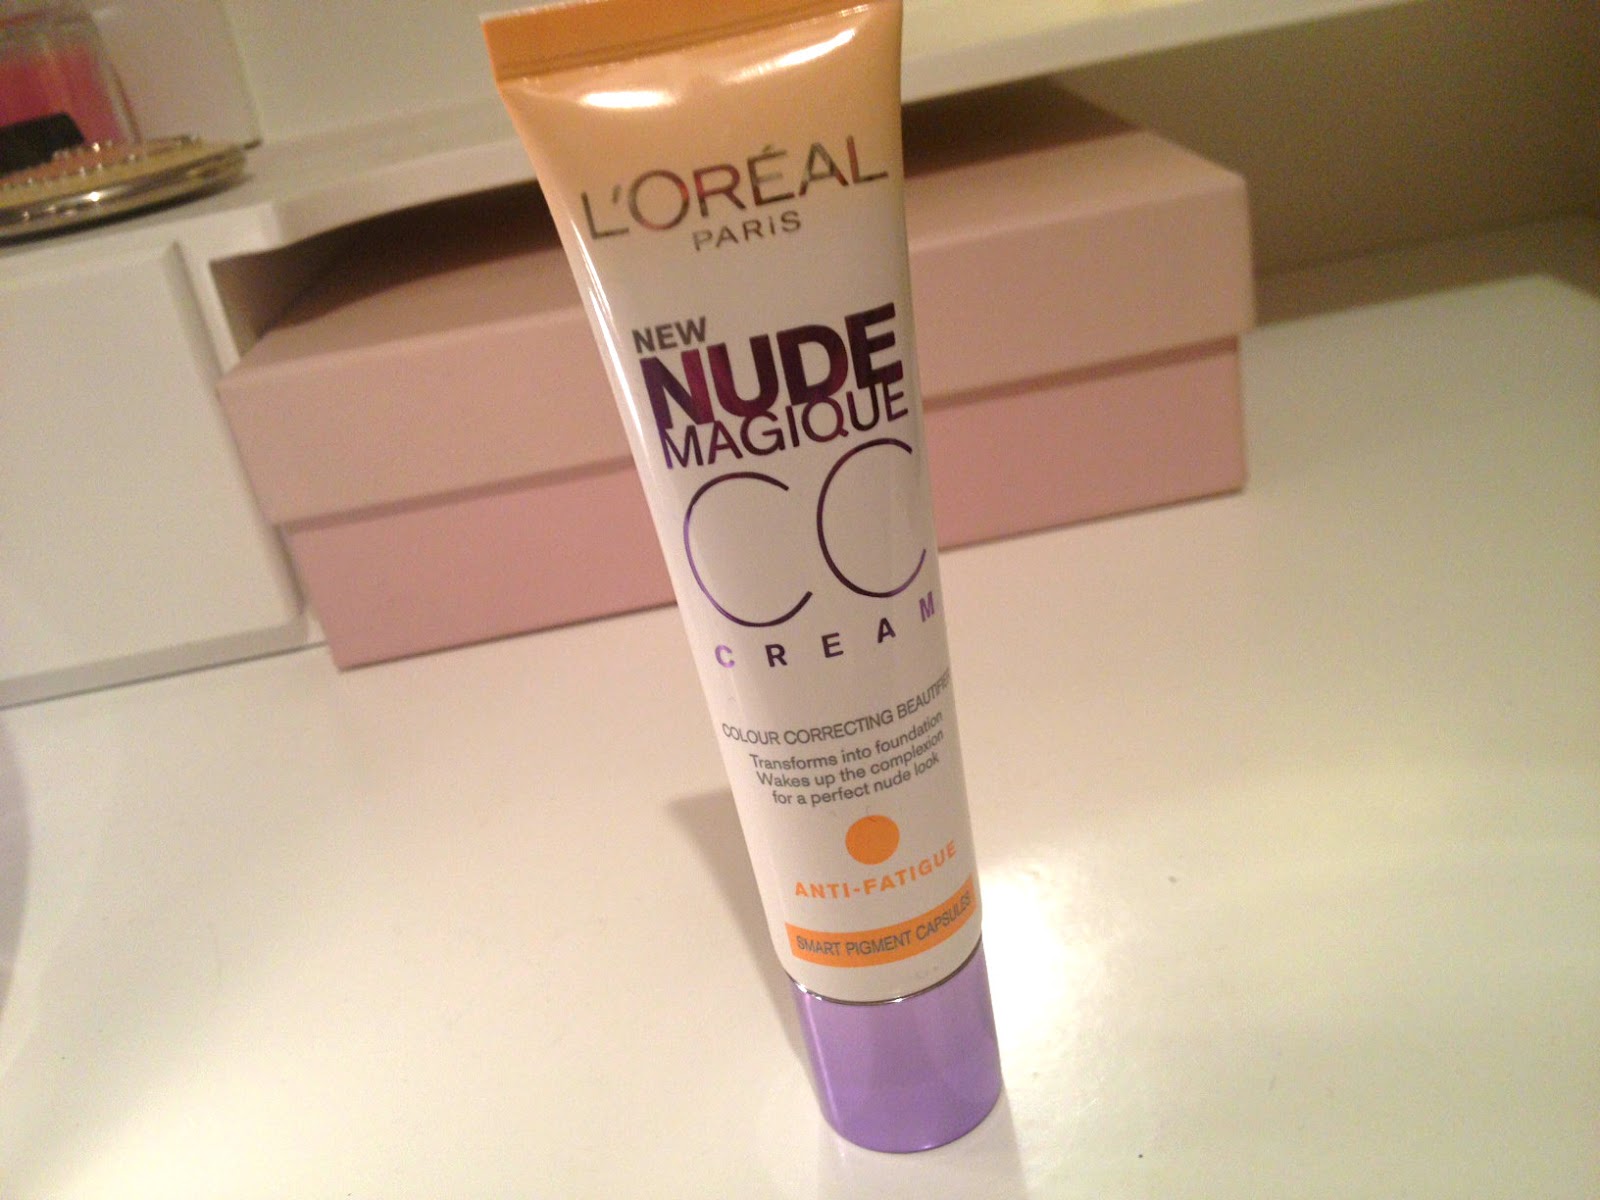 LOreal Paris Nude Magique CC Cream Anti -Redness 30ml 